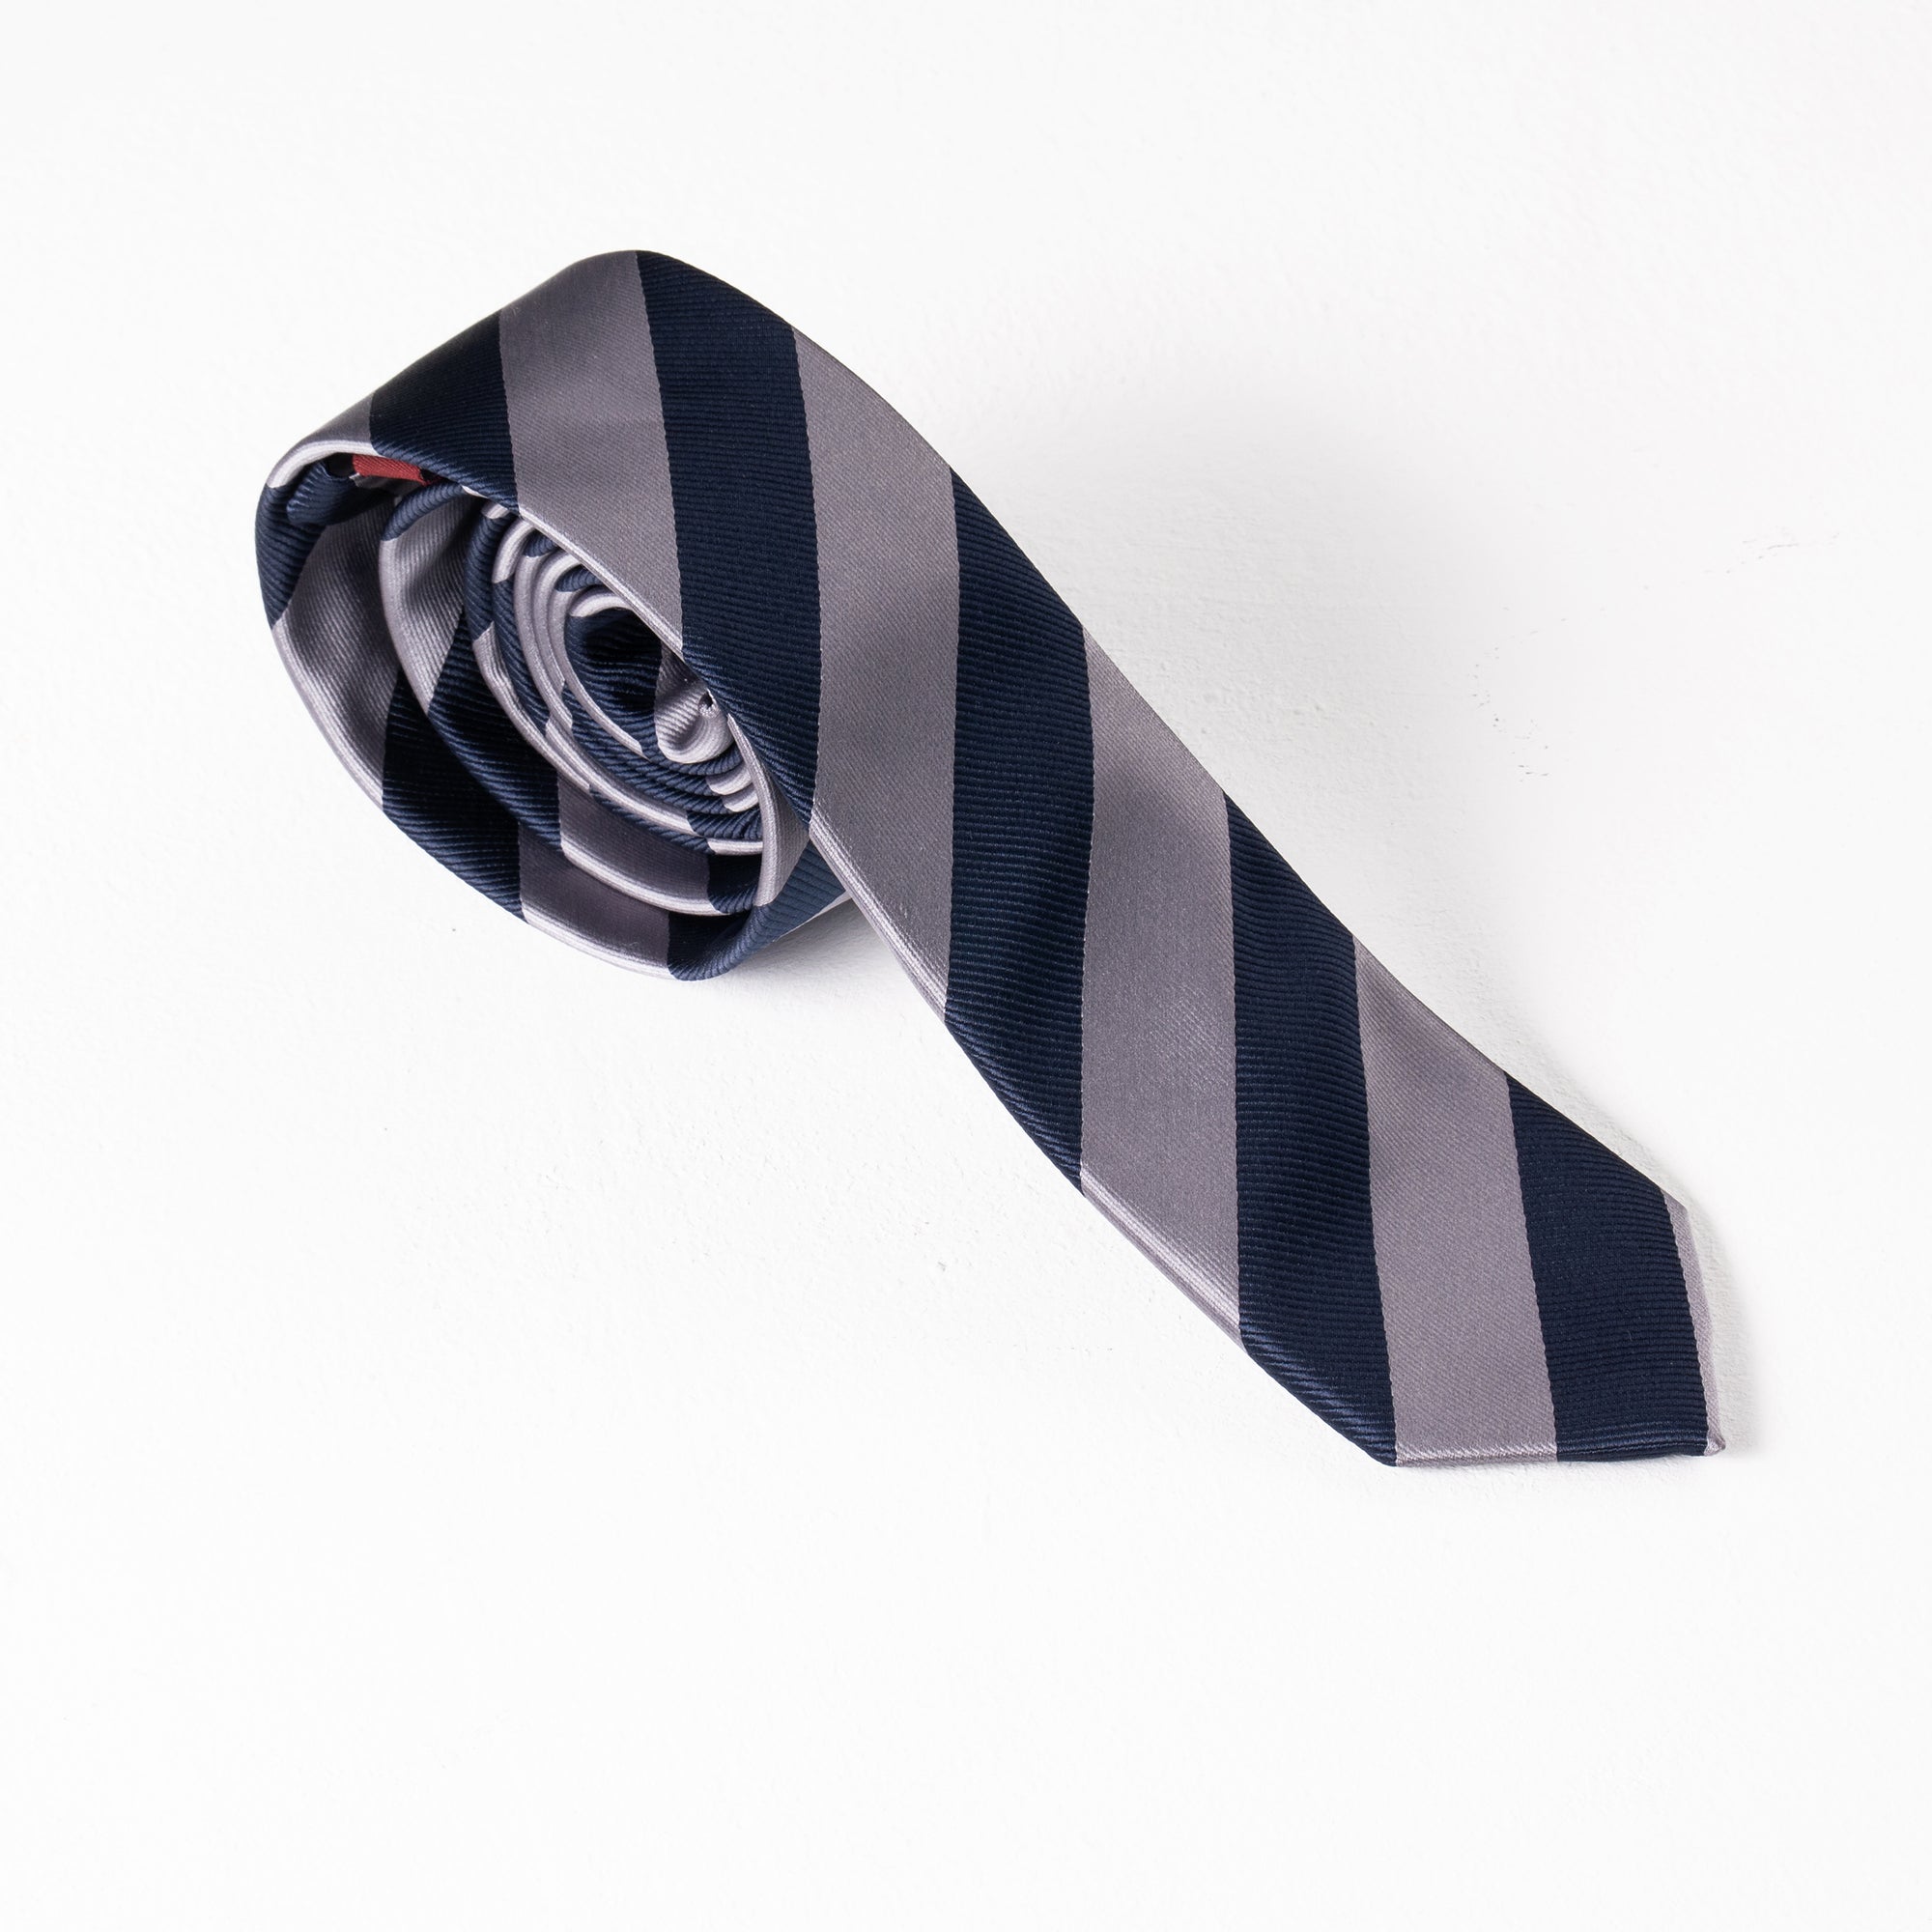 Dim Navy Blue & Gray Stripes Tie